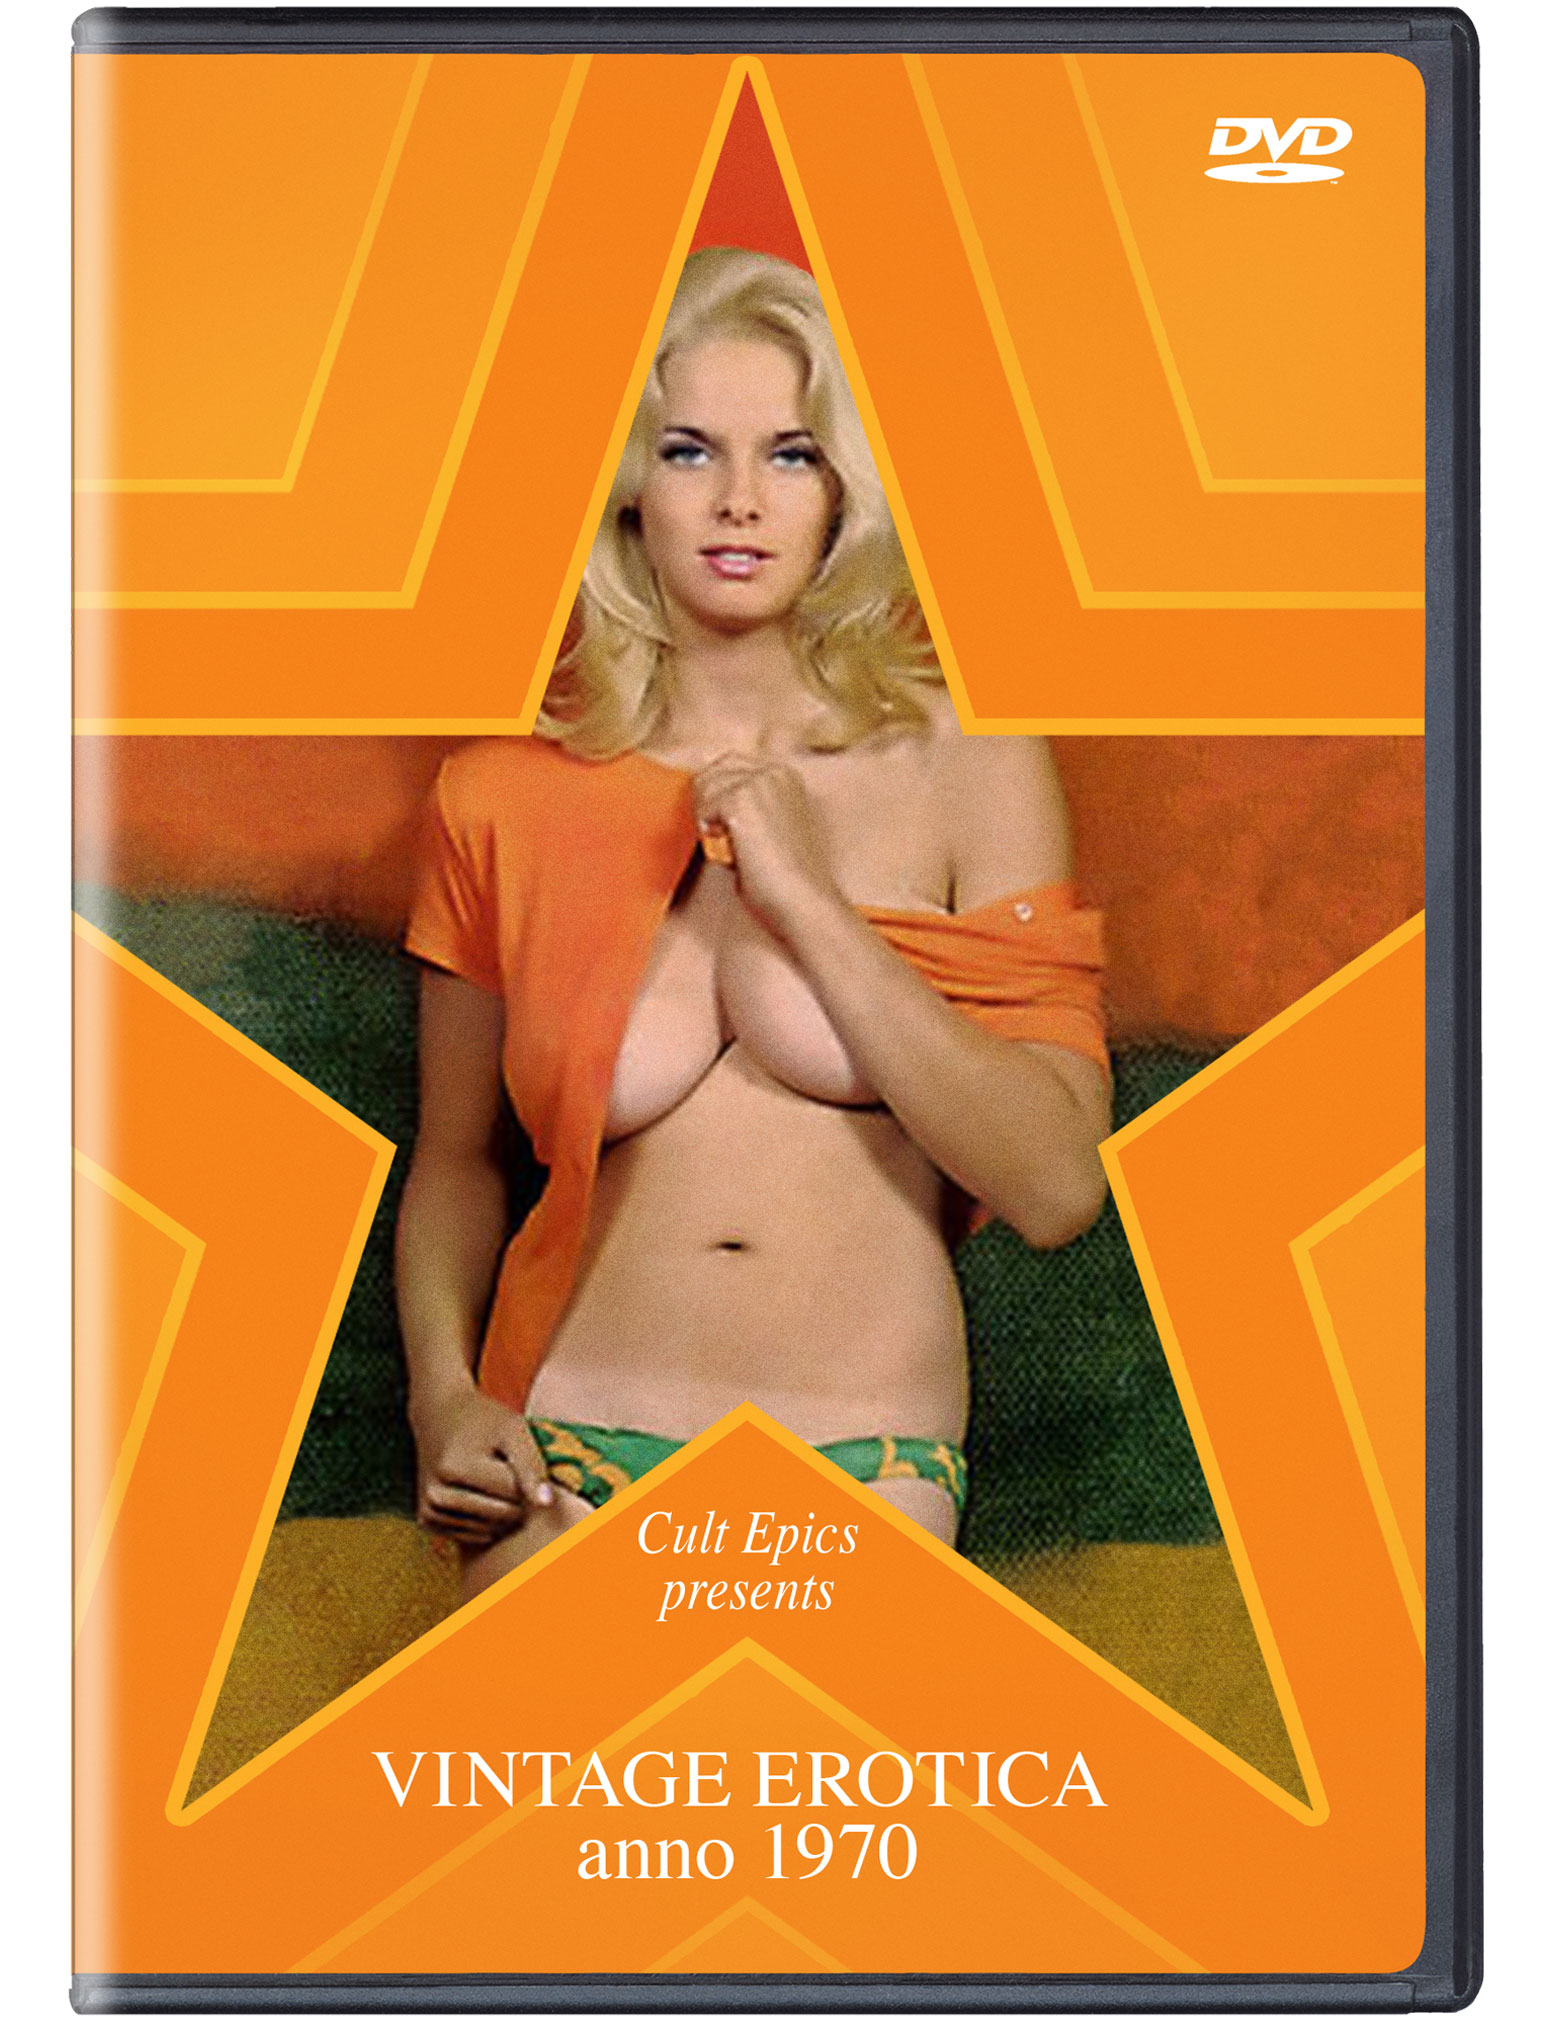 Xxx Vintage Erotica - Vintage Erotica Anno 1970 â€“ Cult Epics